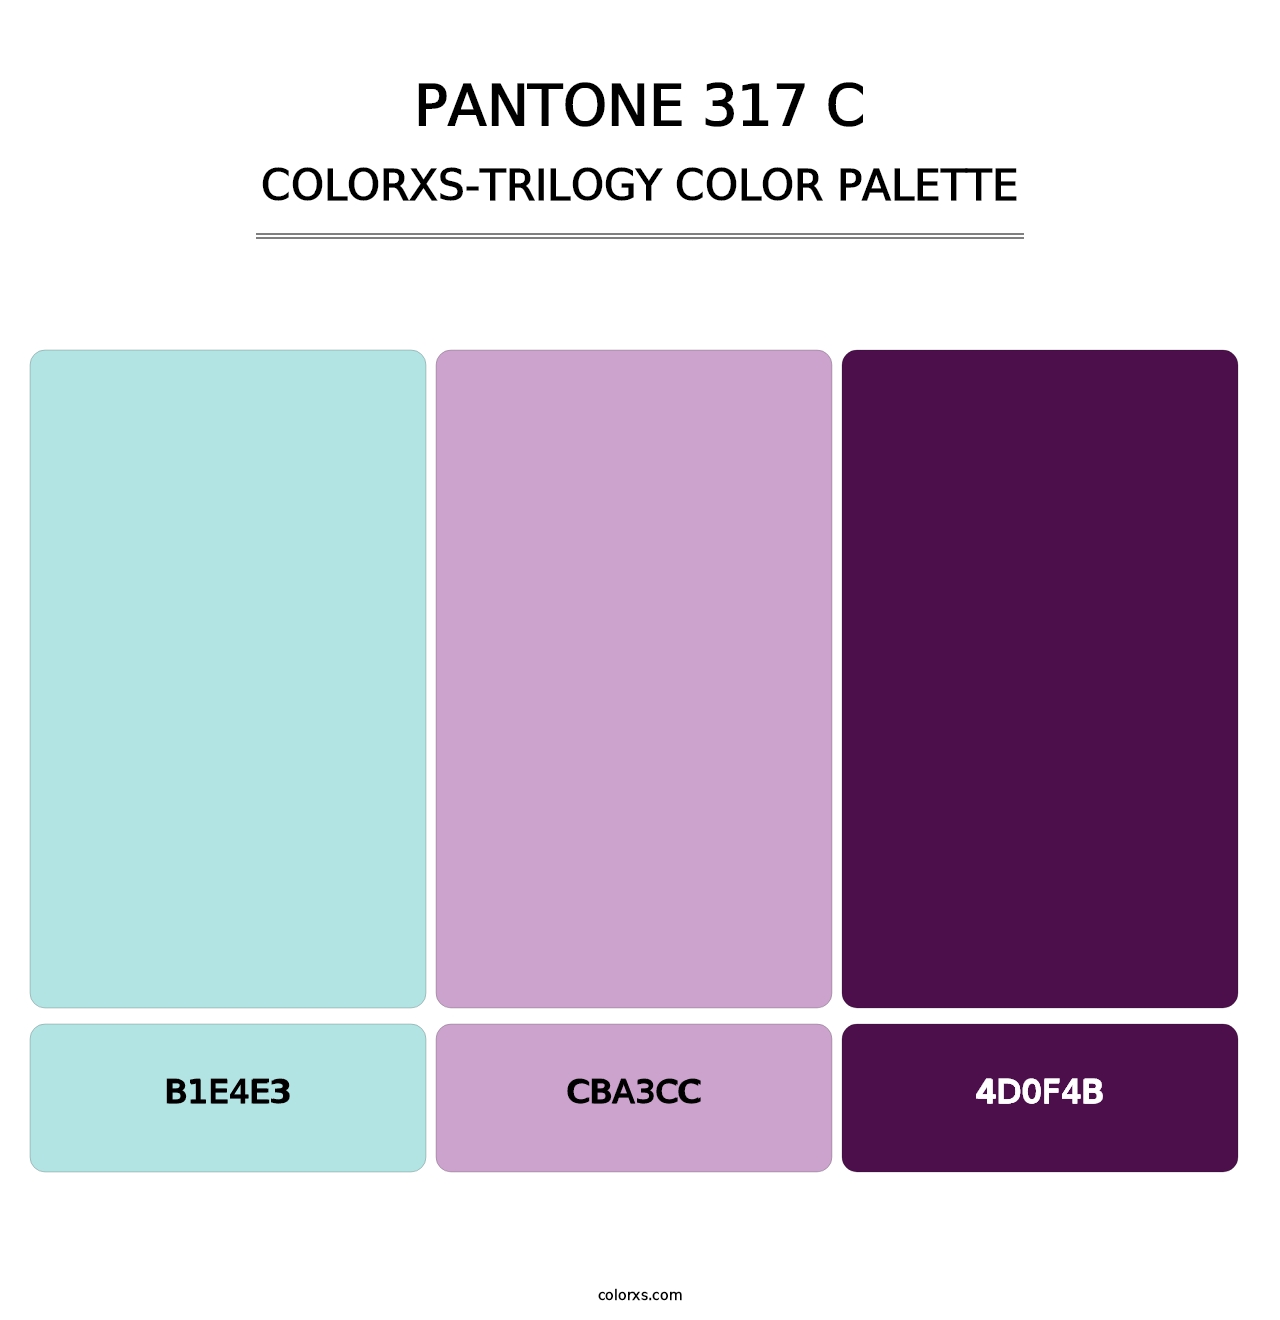 PANTONE 317 C - Colorxs Trilogy Palette